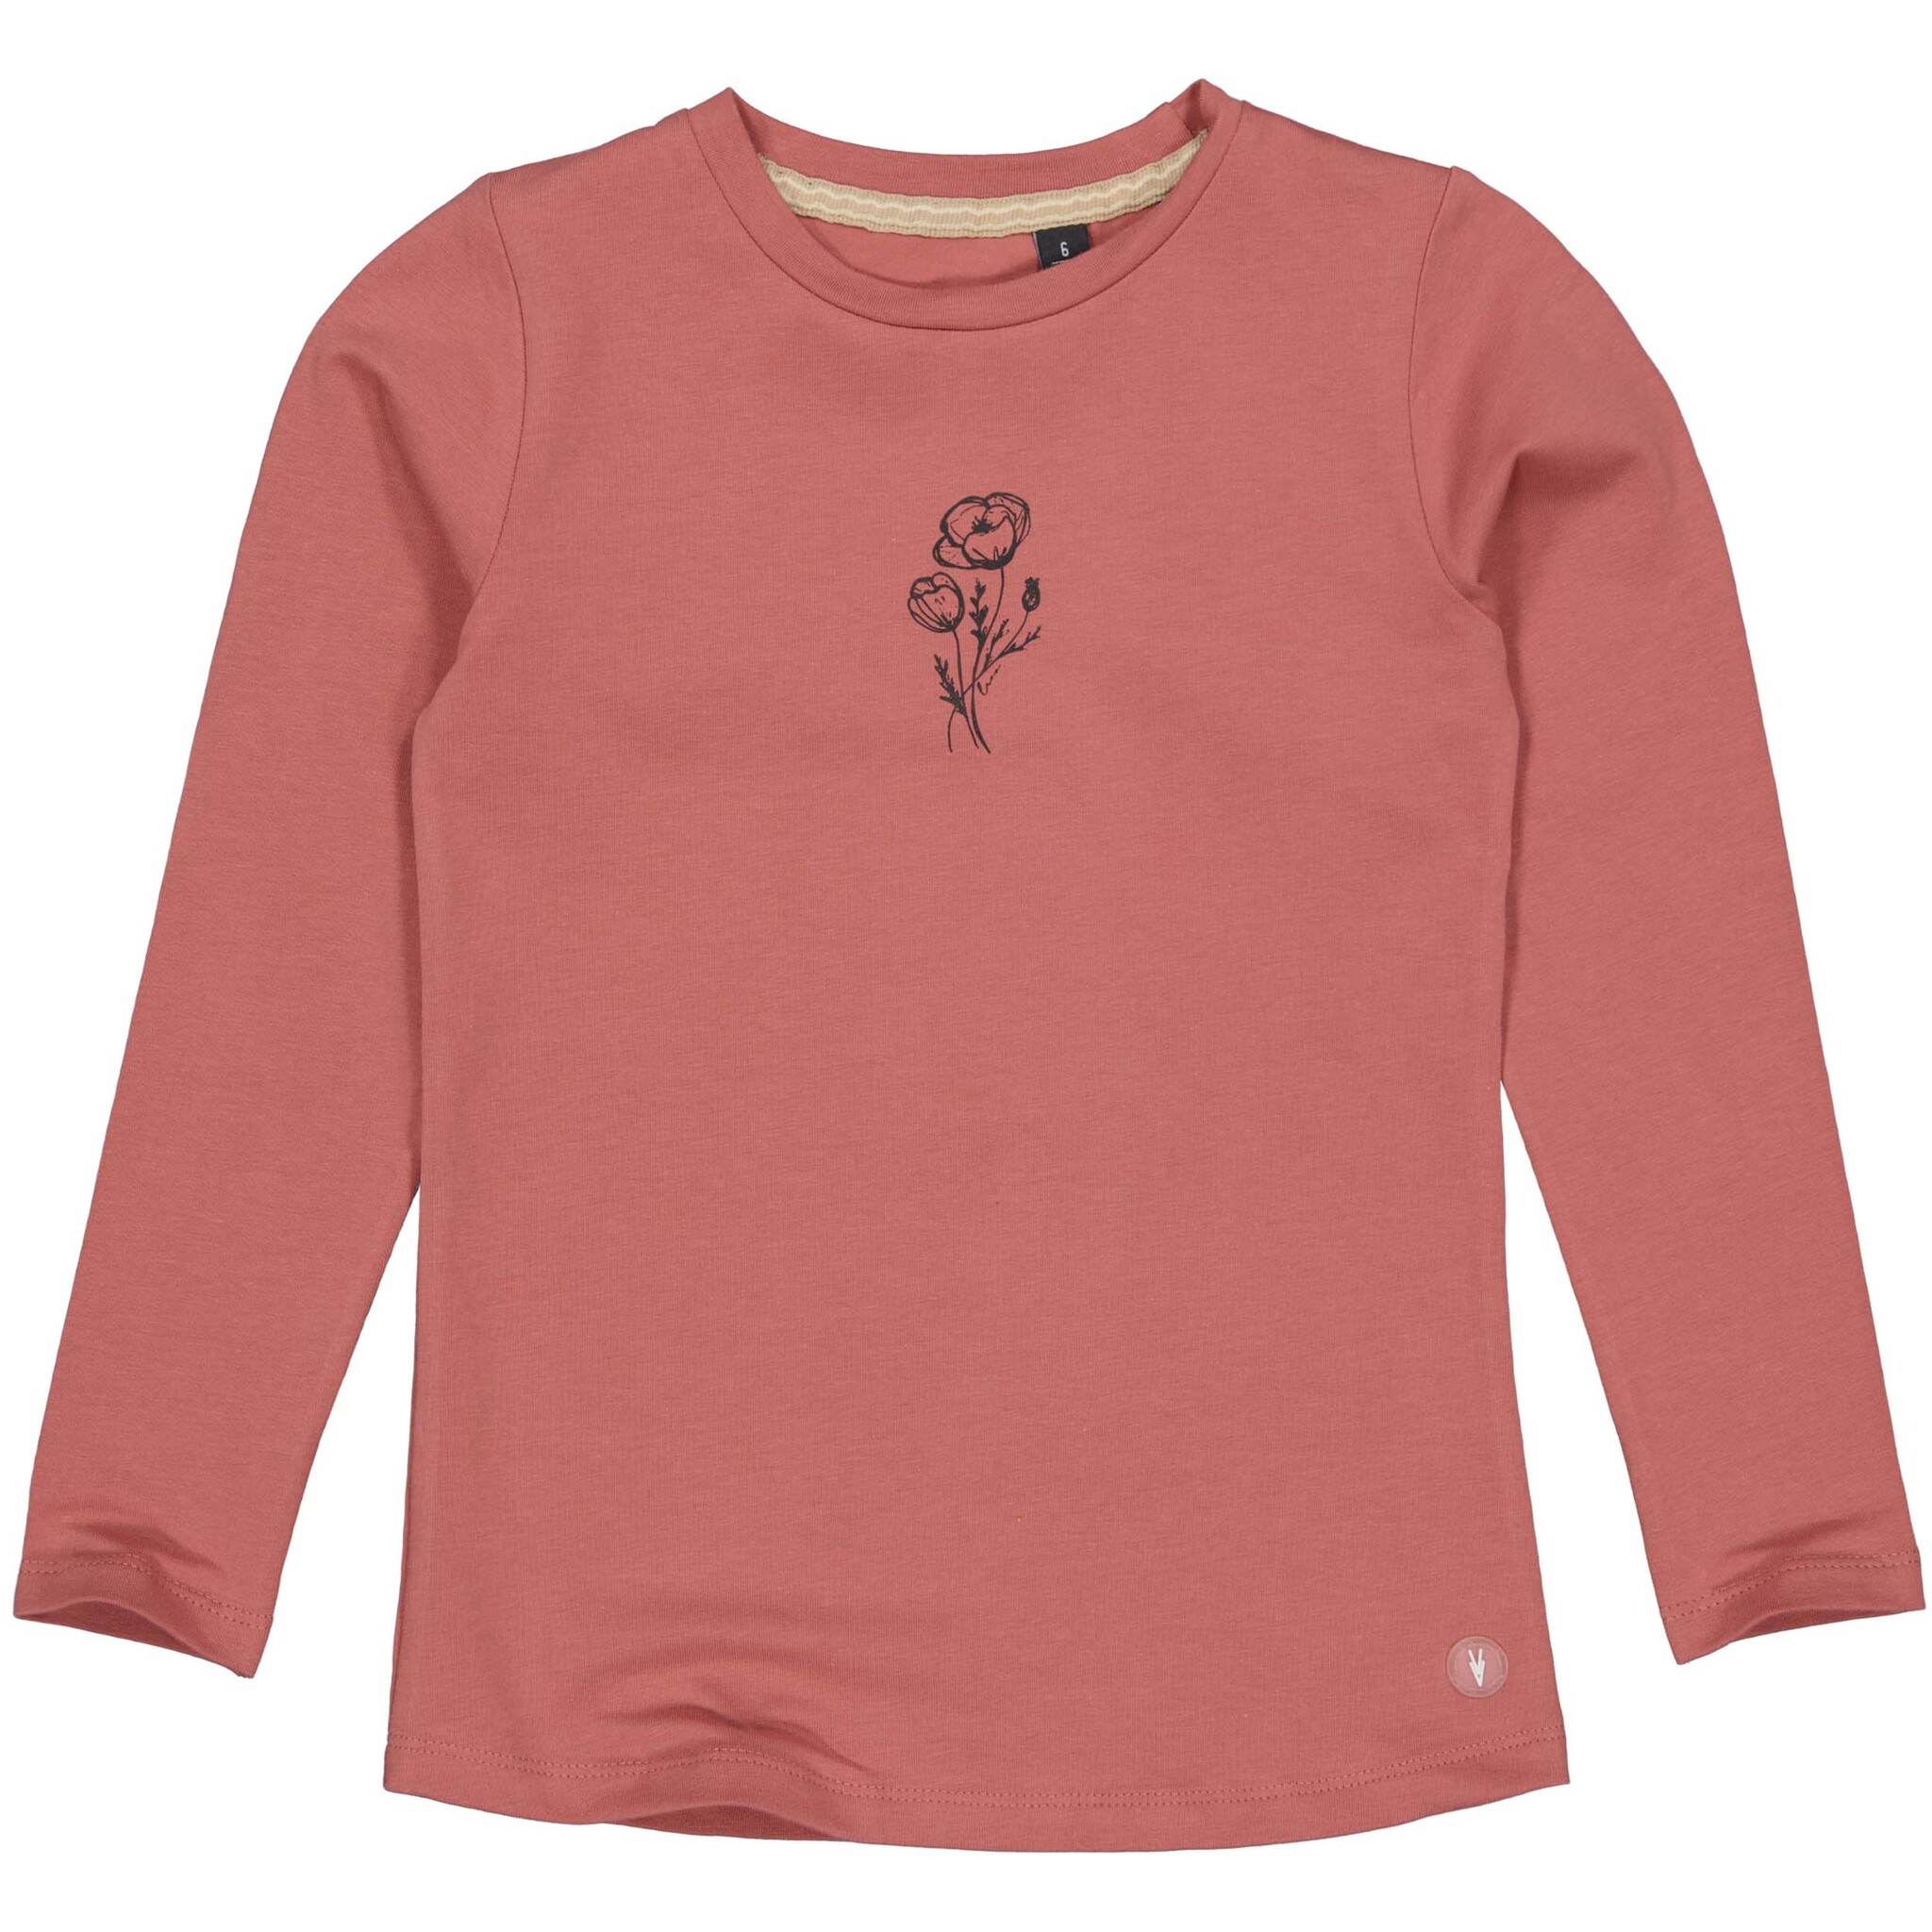 LEVV Little Meisjes shirt - Genice - Mahogany roze